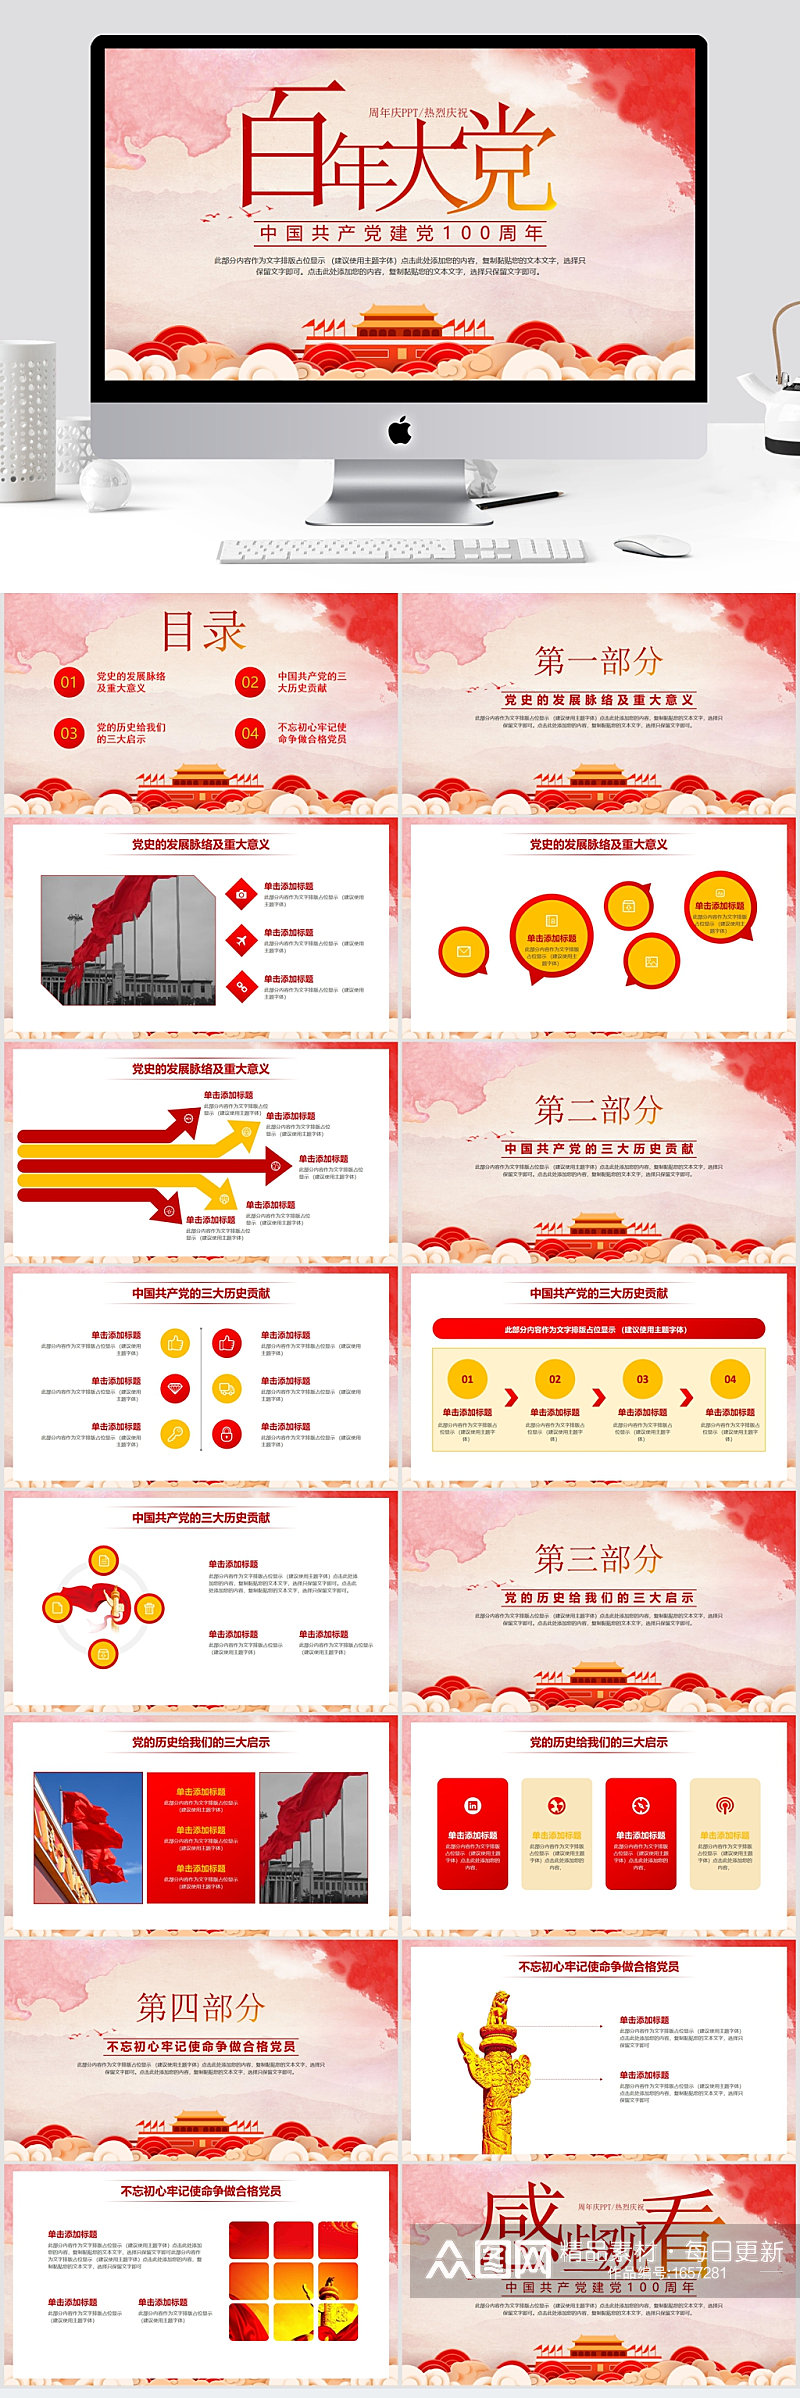 中国共产党建党100周年庆典PPT素材